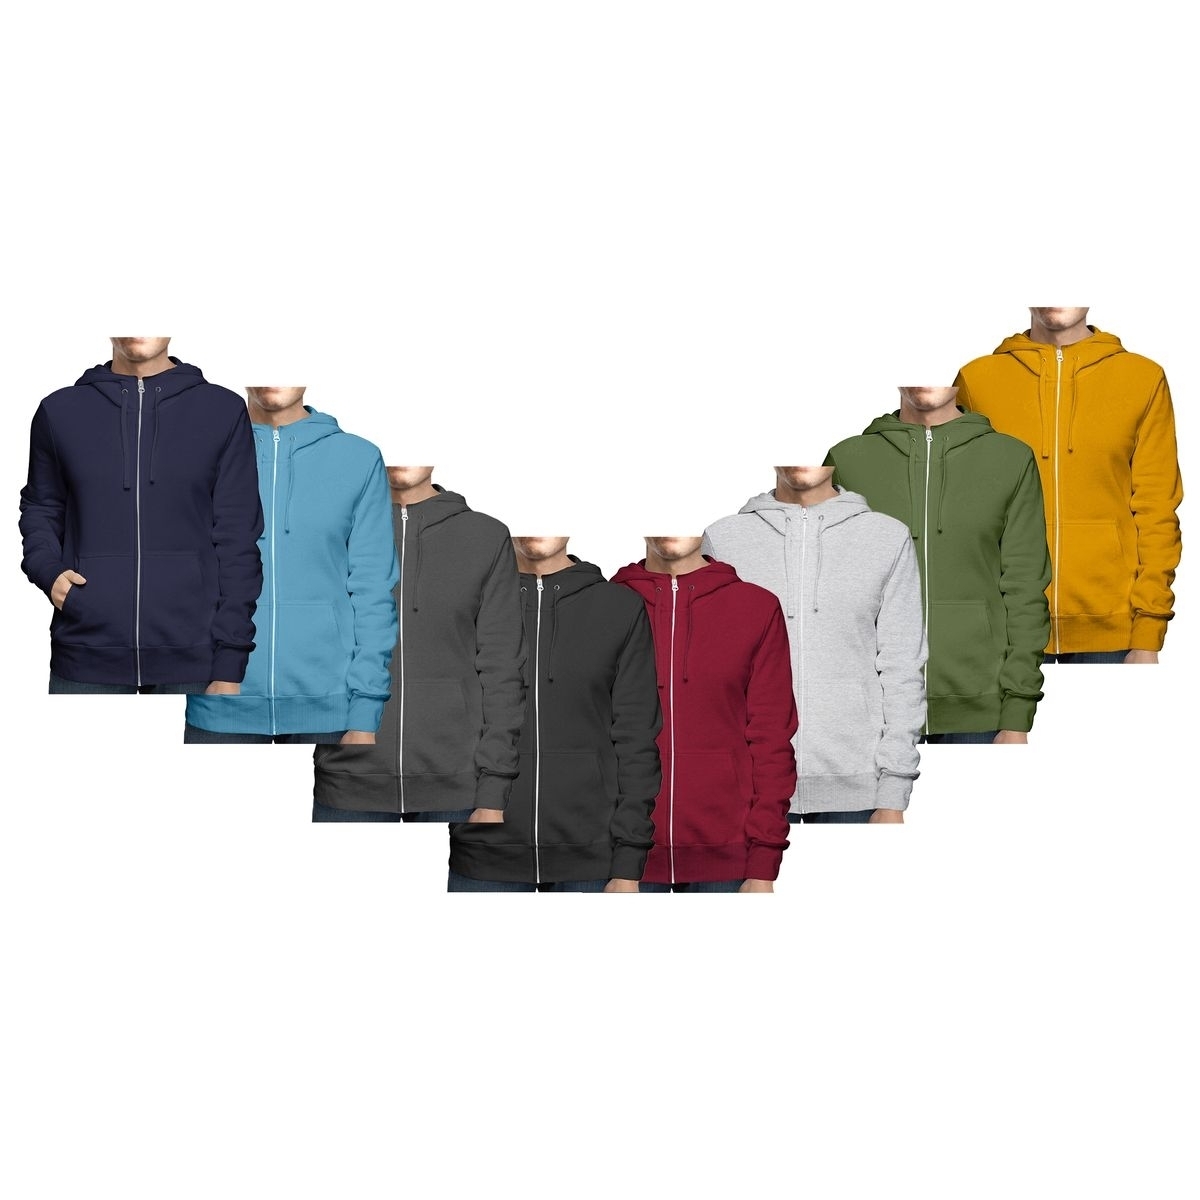 2-Pack: Men's Winter Warm Soft Cozy Full Zip-Up Fleece Lined Hoodie Sweatshirt - 4X